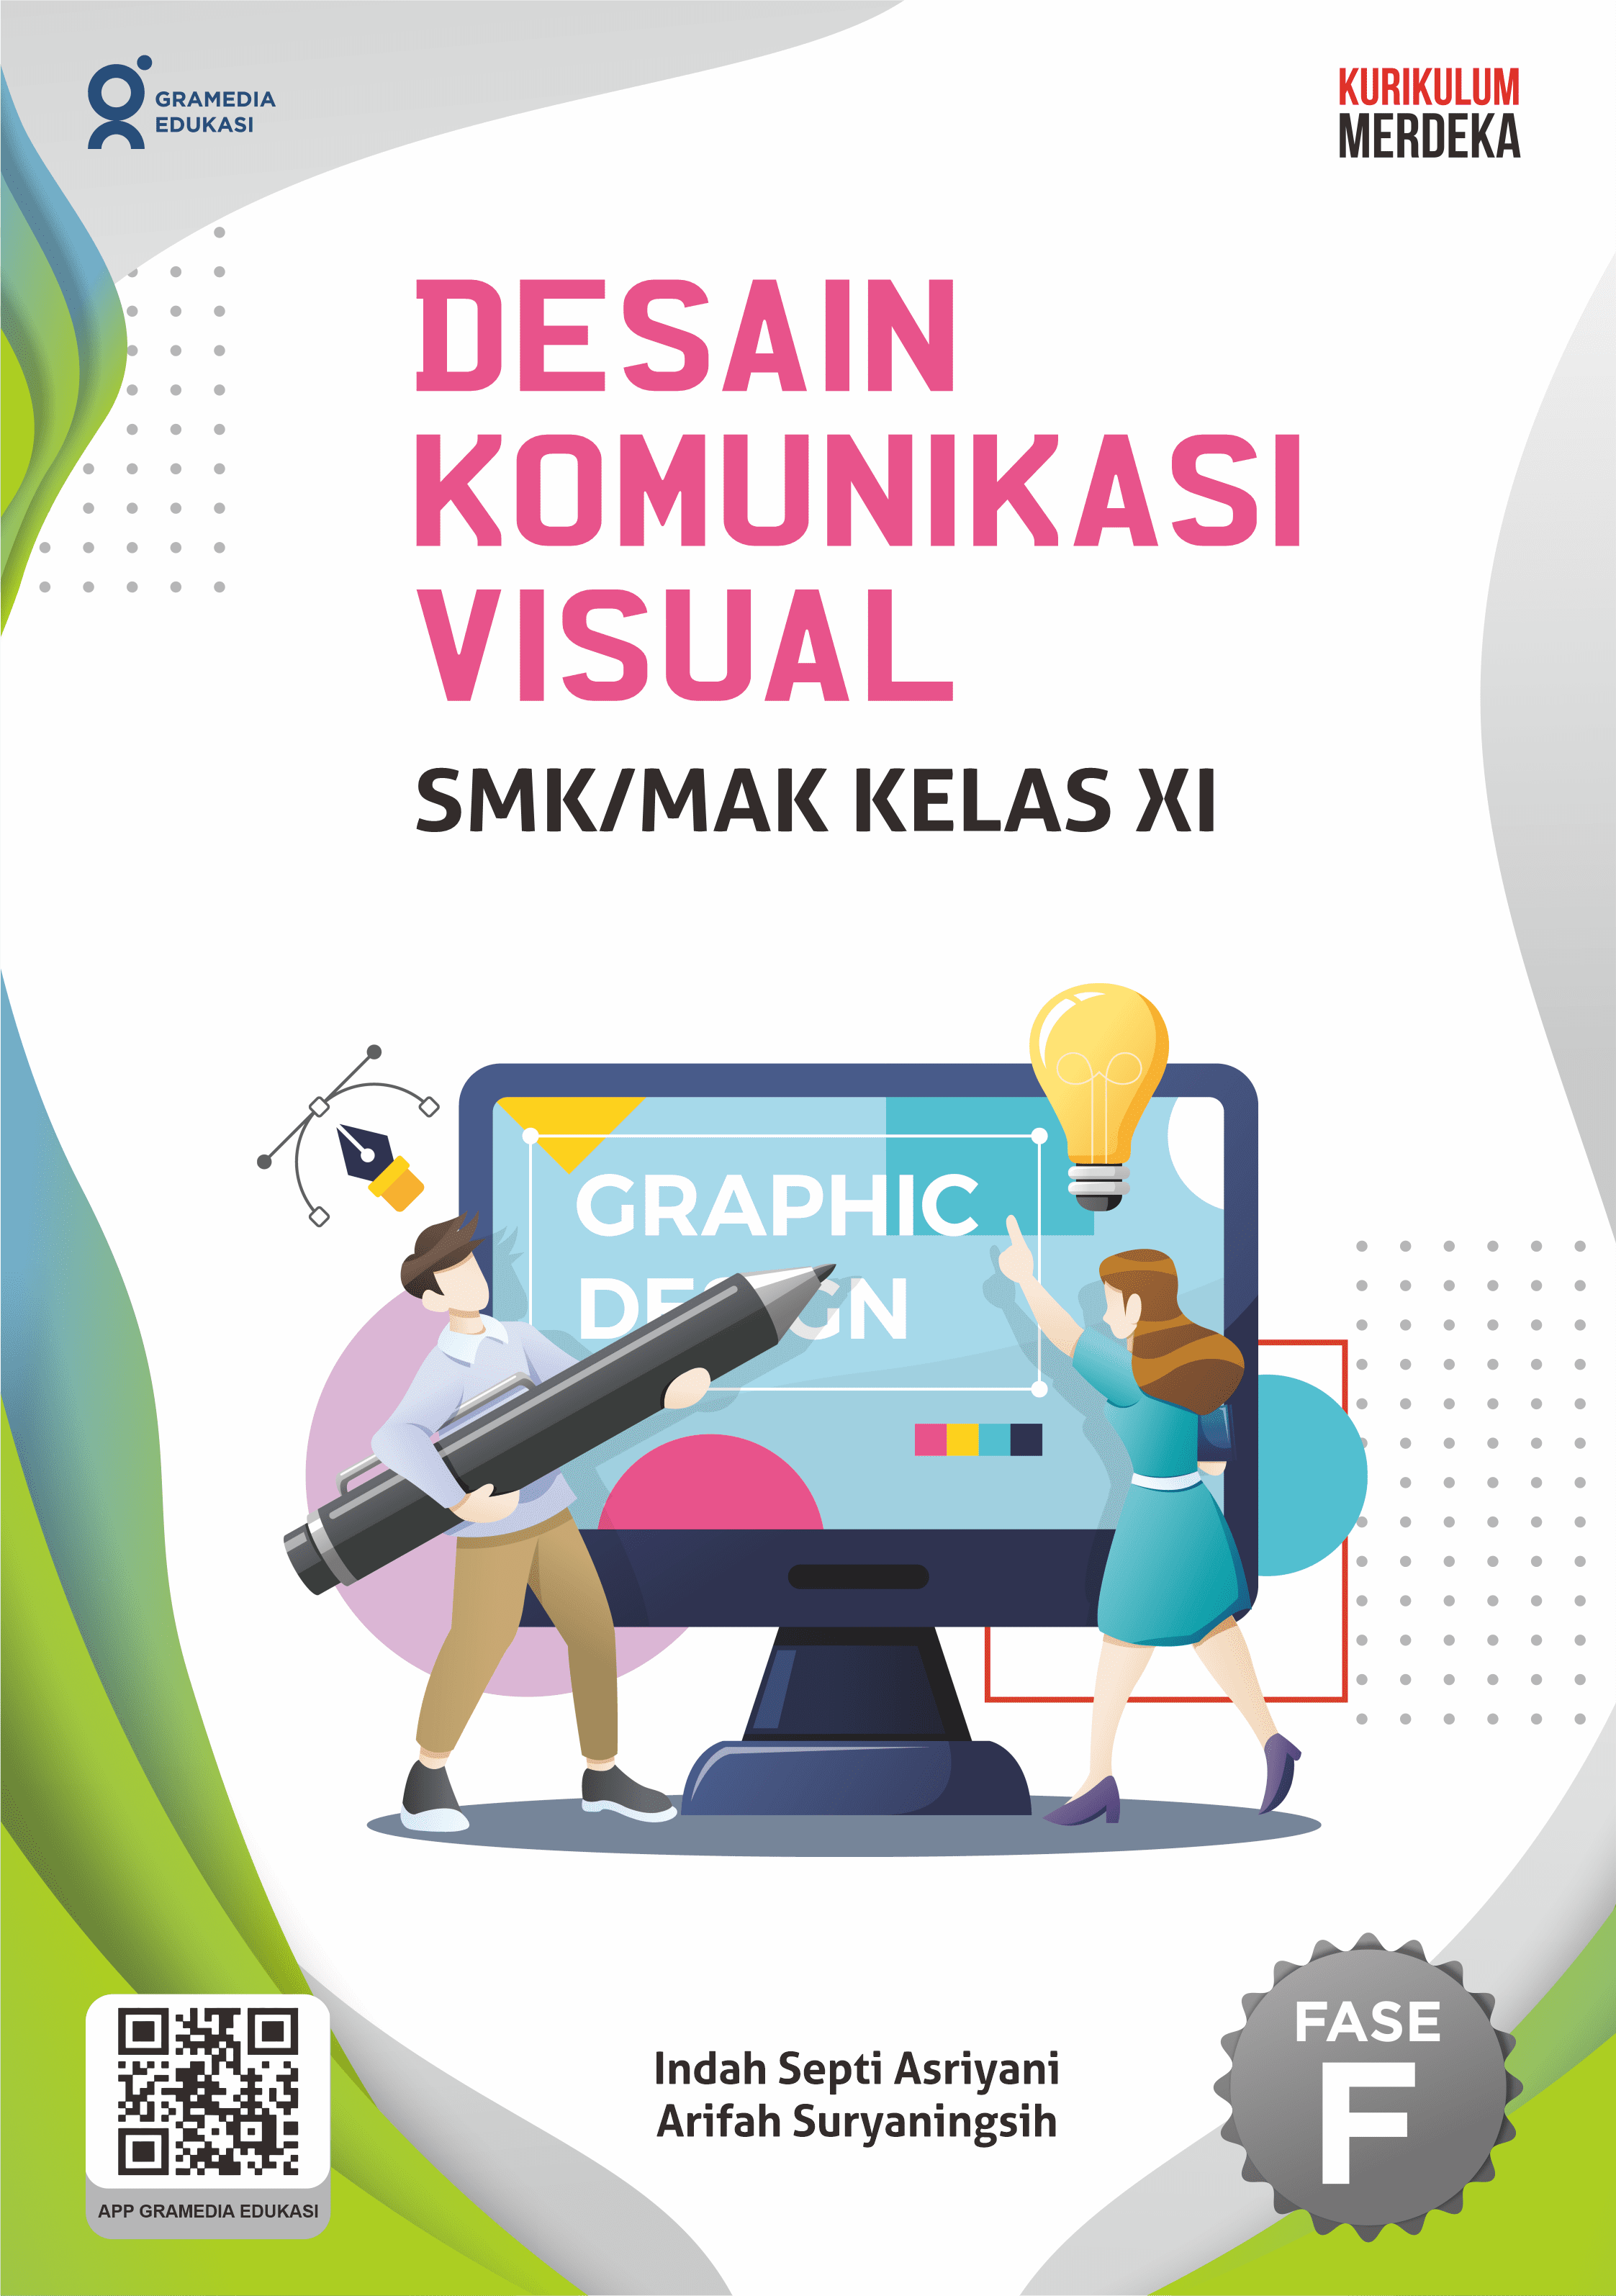 Desain komunikasi visual SMK/MAK kelas XI